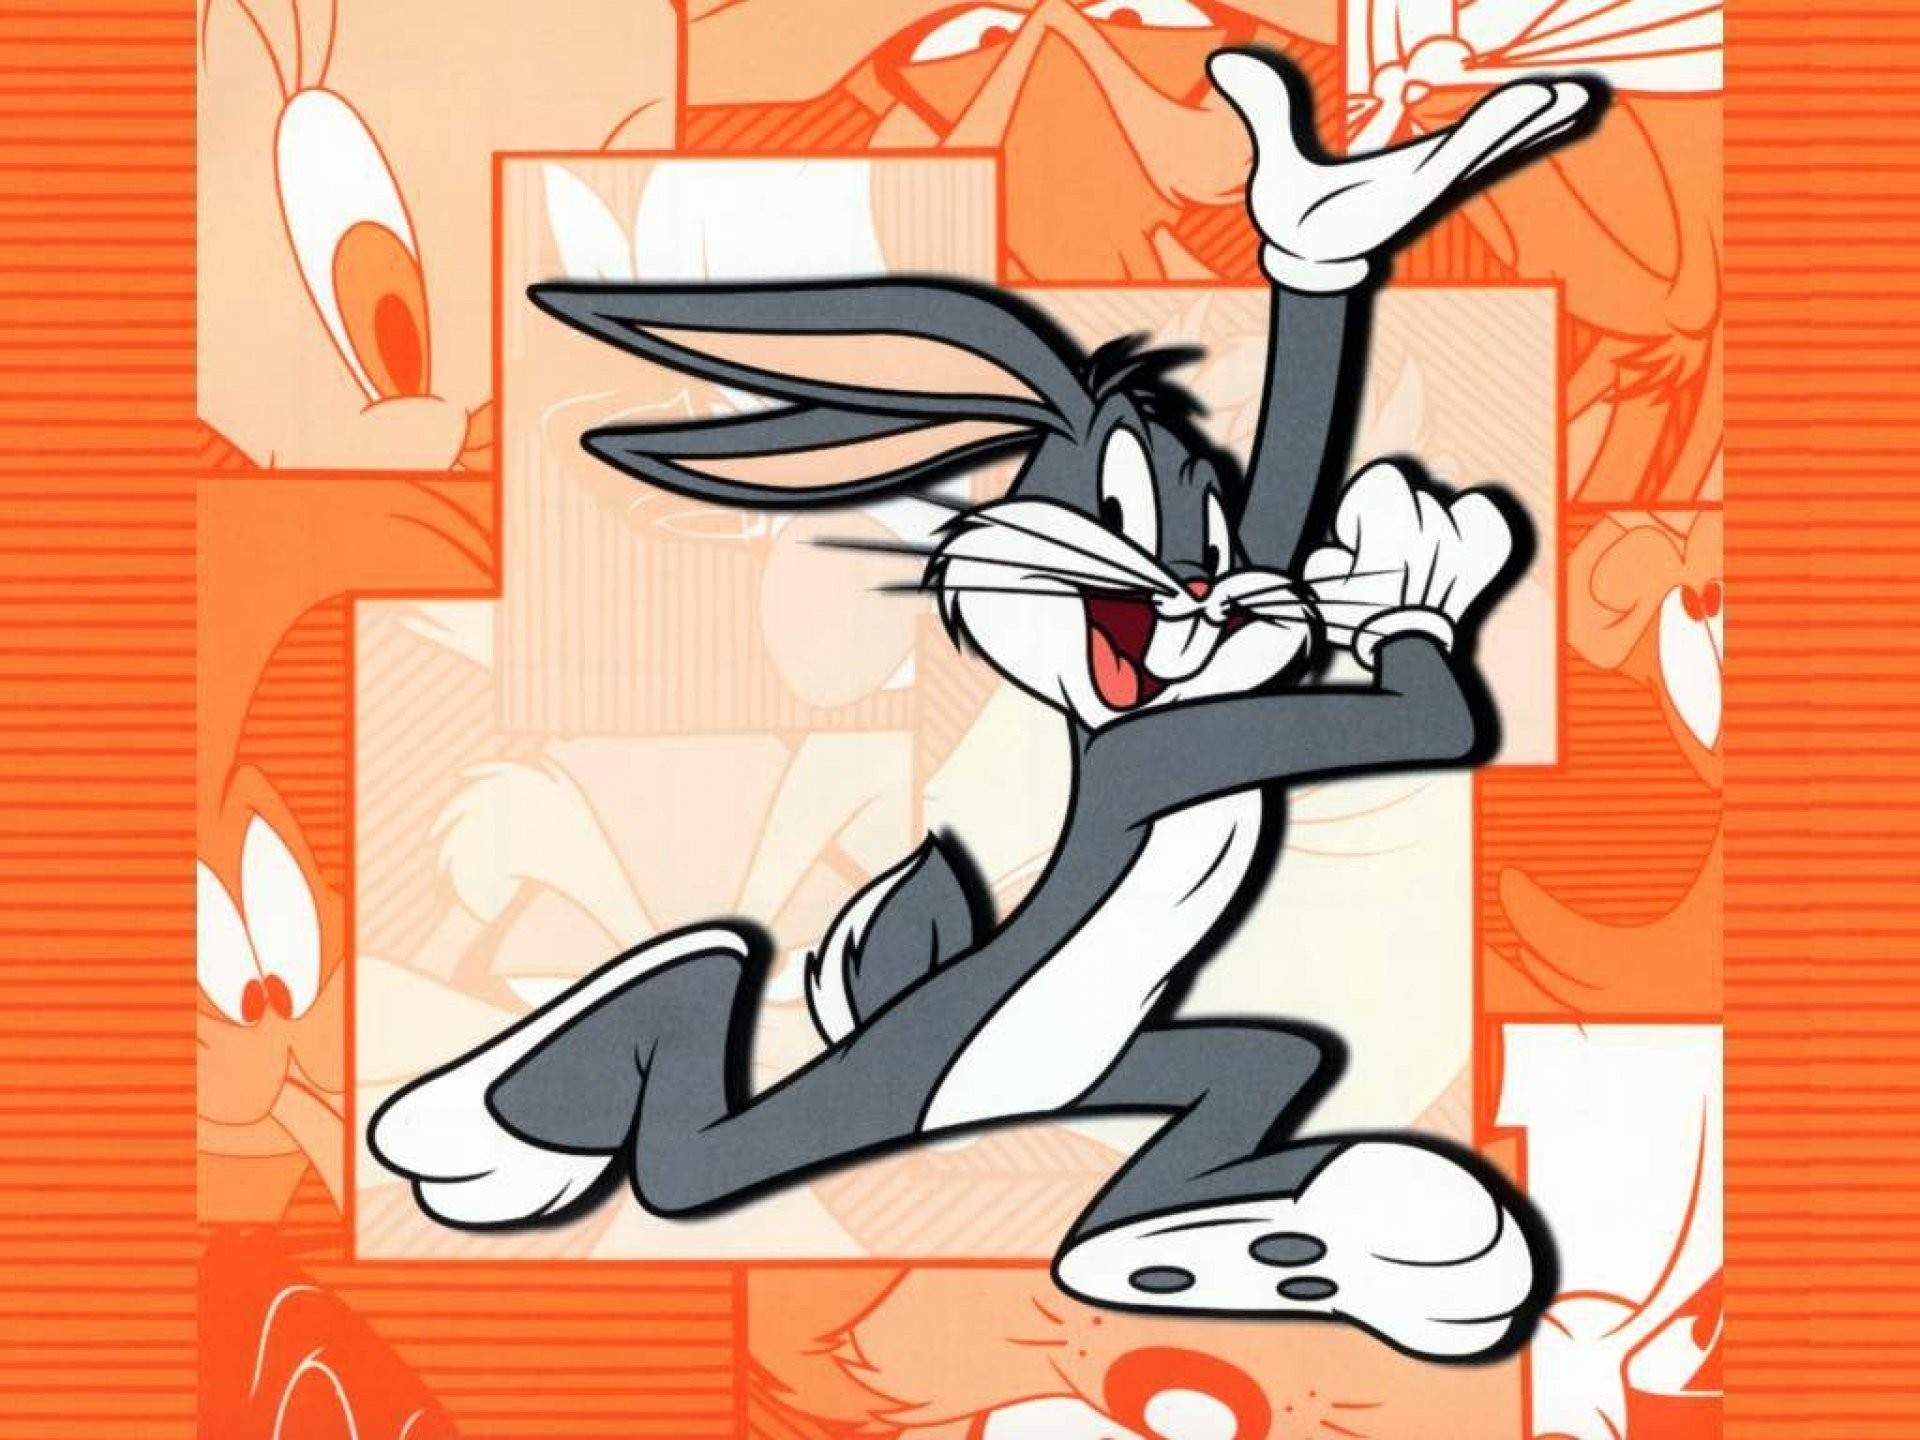 1920x1440 Tecknat - Bugs Bunny Bugs Bakgrund